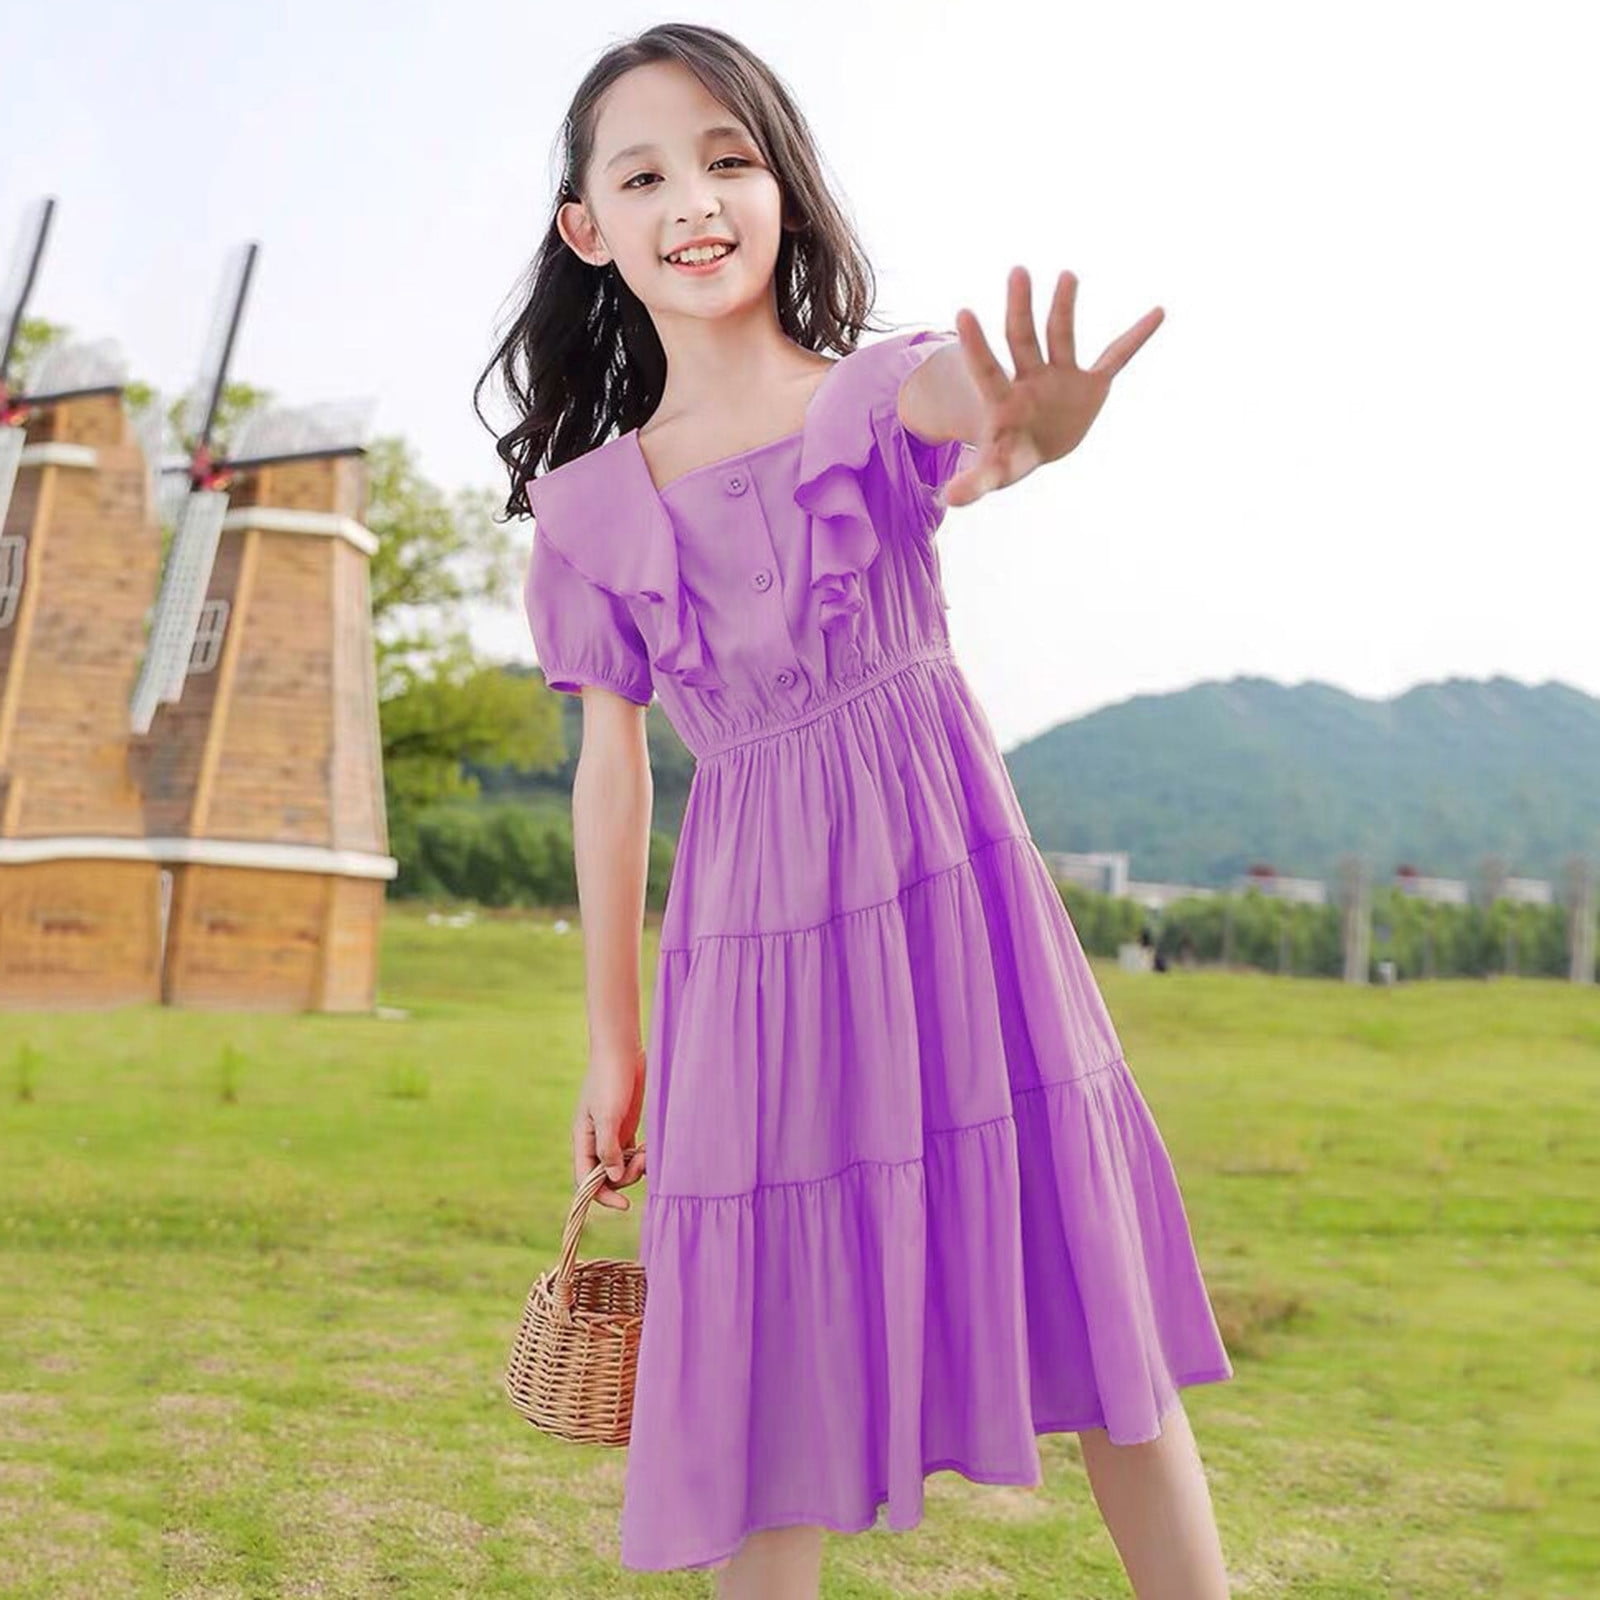 Flower Girl Dresses - Buy Flower Girl Dresses online at Best Prices in  India | Flipkart.com